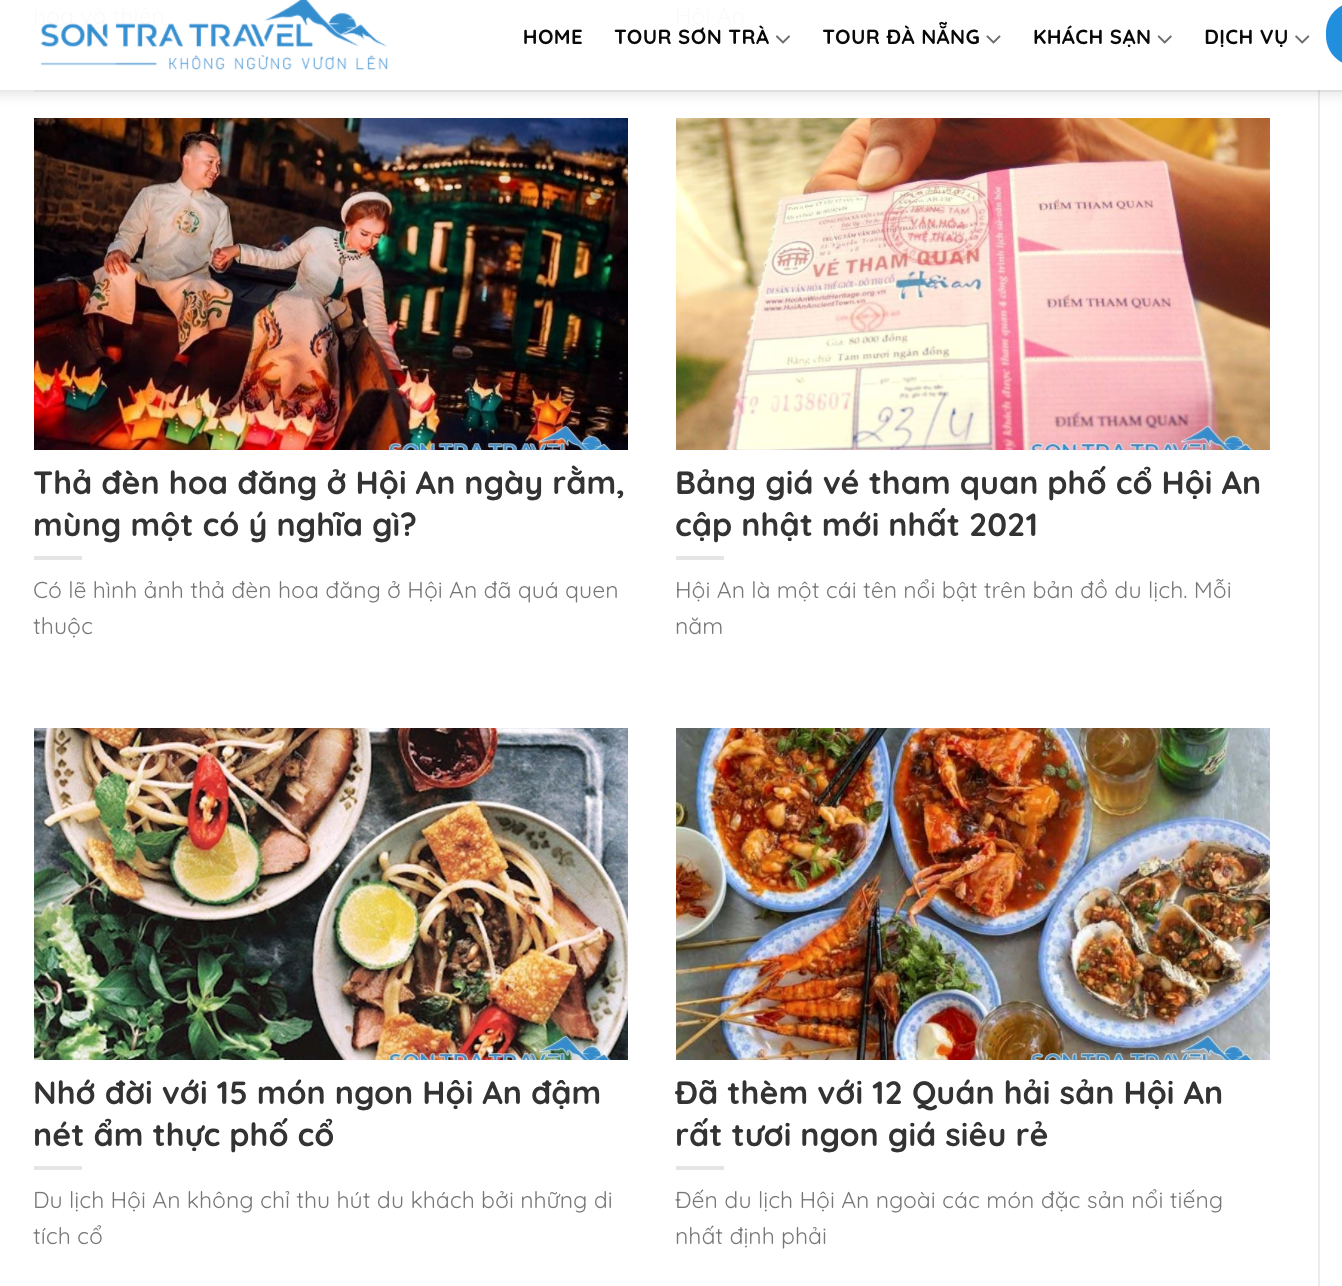 Ngoài tổ chức tour Sơn Trà Travel còn review về tin tức, ẩm thực Hội An